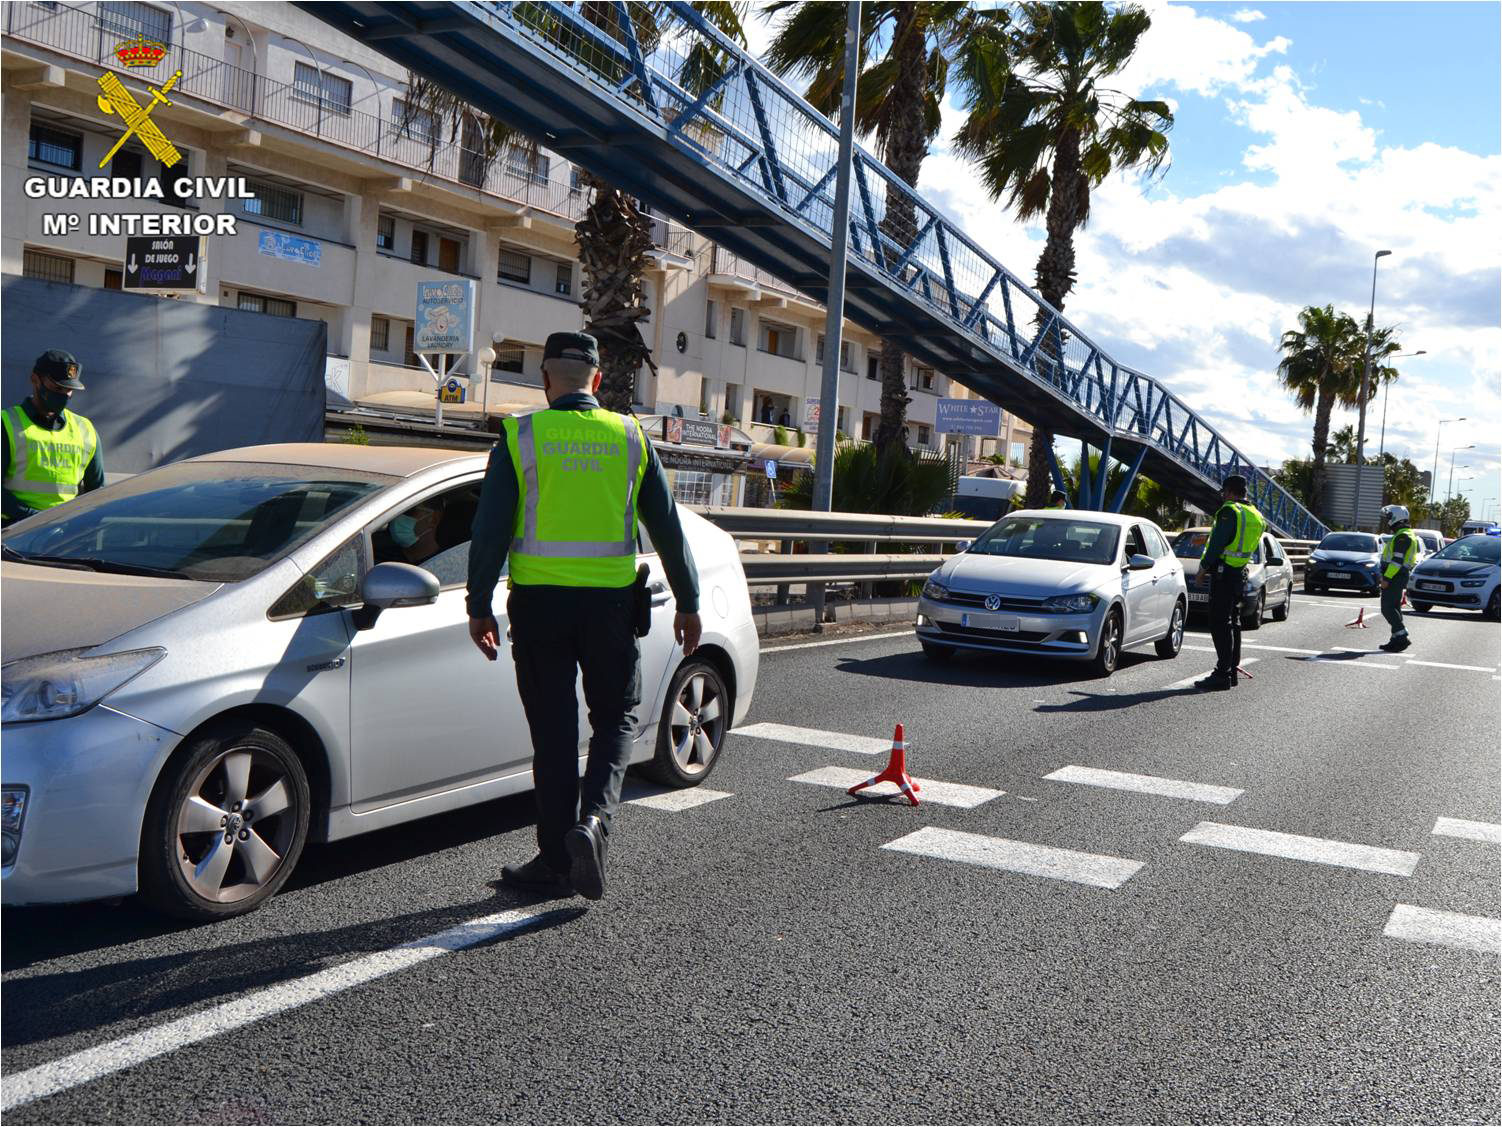 39 conductores de la provincia de Alicante pasan a disposición judicial